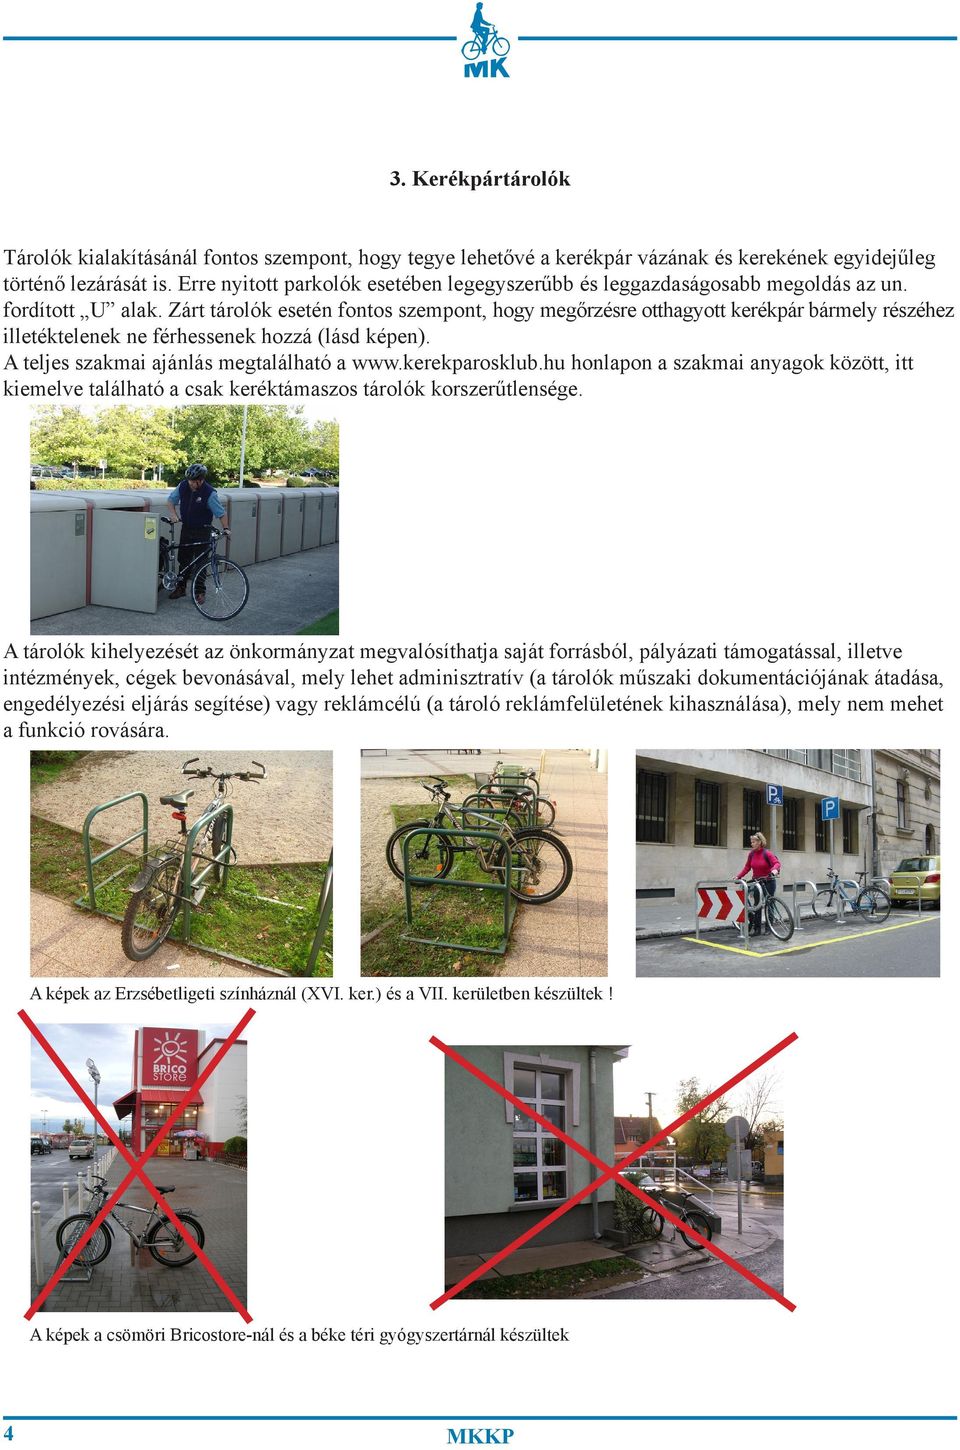 Zárt tárolók esetén fontos szempont, hogy megőrzésre otthagyott kerékpár bármely részéhez illetéktelenek ne férhessenek hozzá (lásd képen). A teljes szakmai ajánlás megtalálható a www.kerekparosklub.